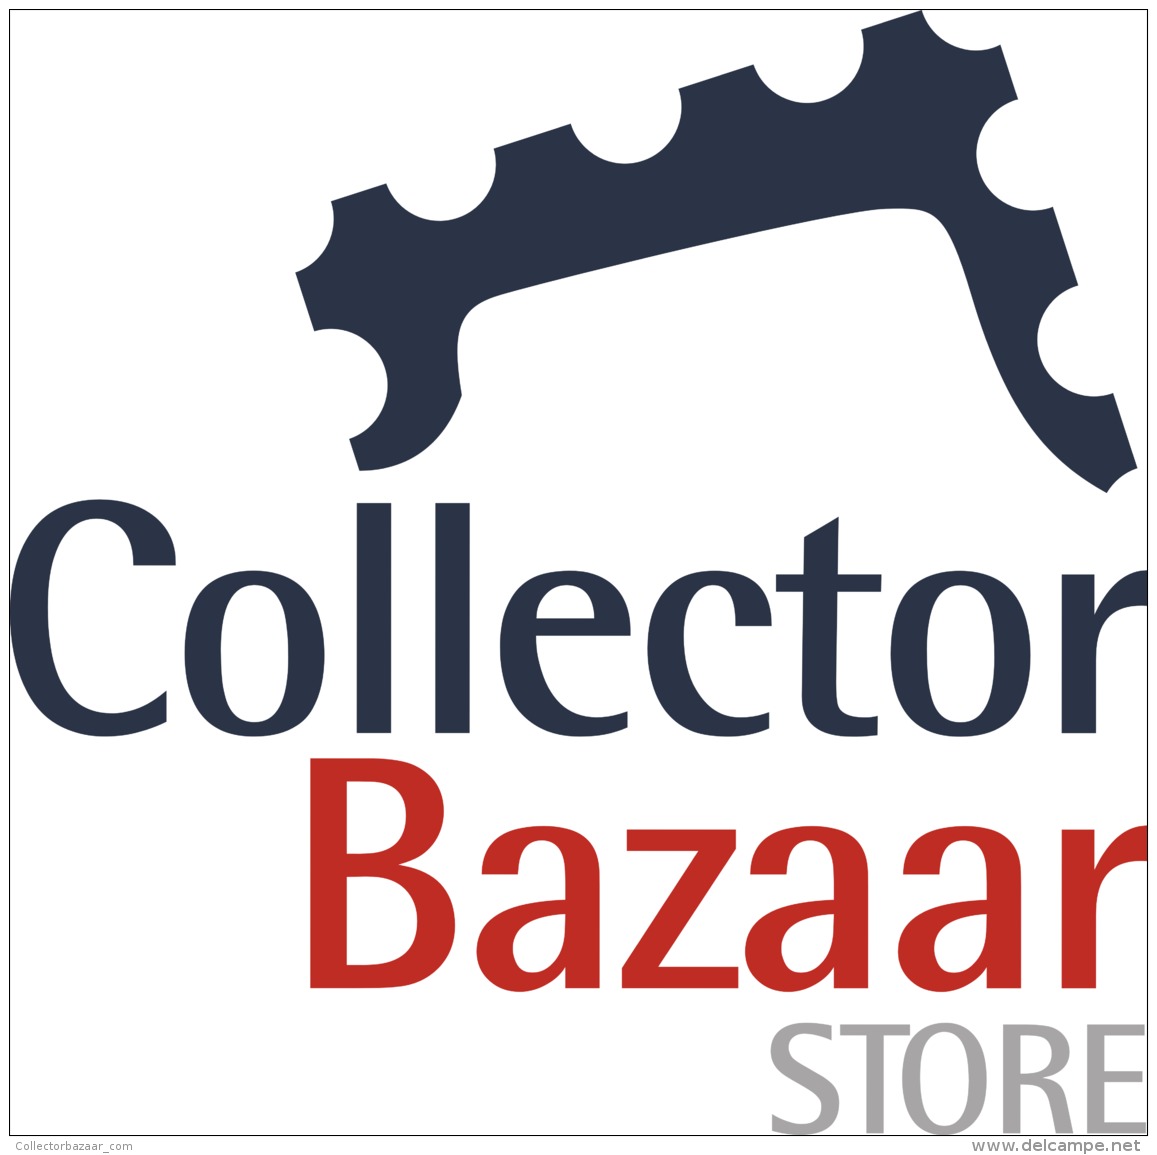 collectorbazaar_com